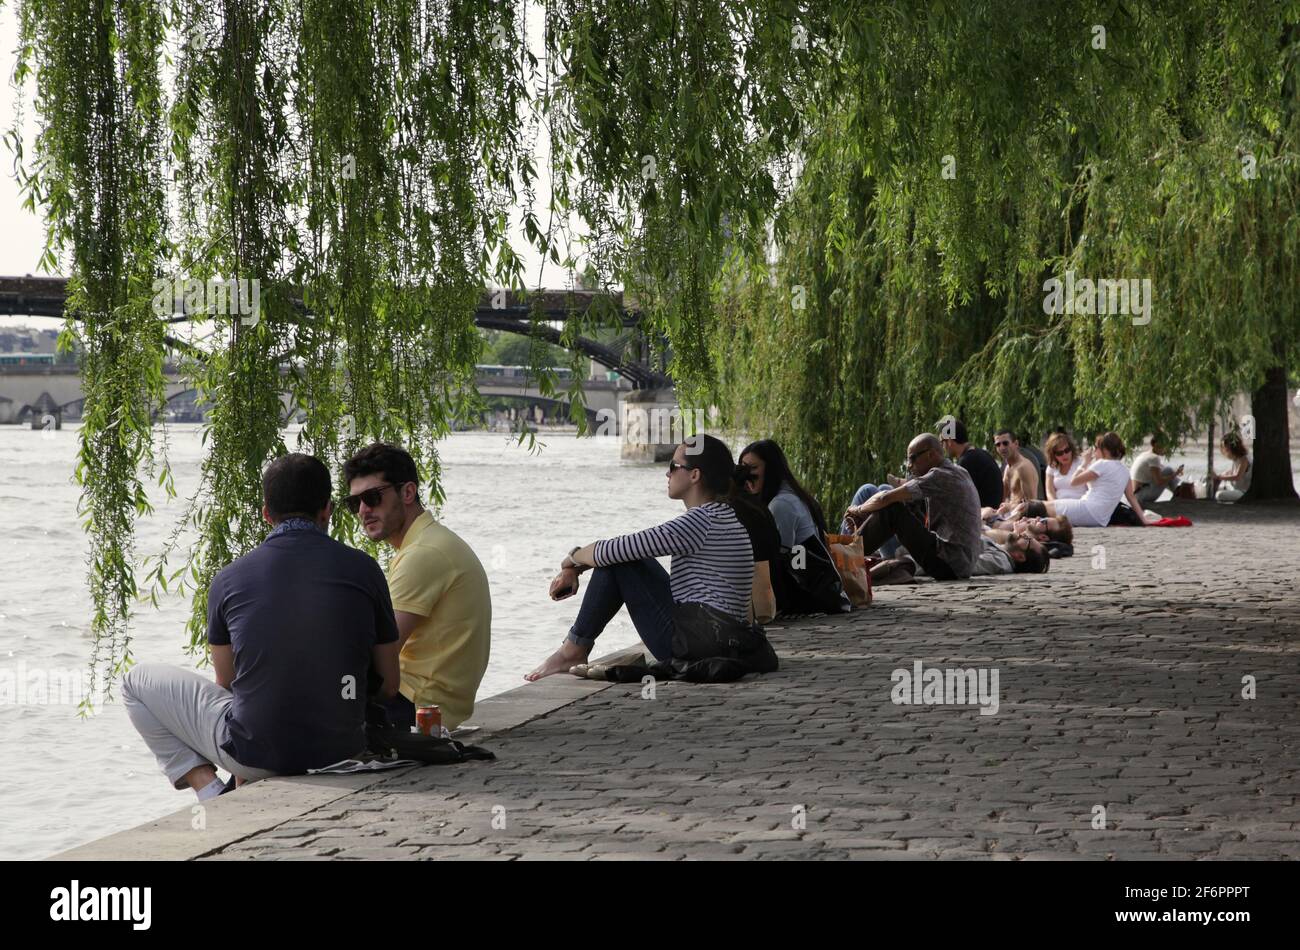 Jeunes à la frontière de la Seine à Paris France. Pont des Arts en arrière-plan. Banque D'Images